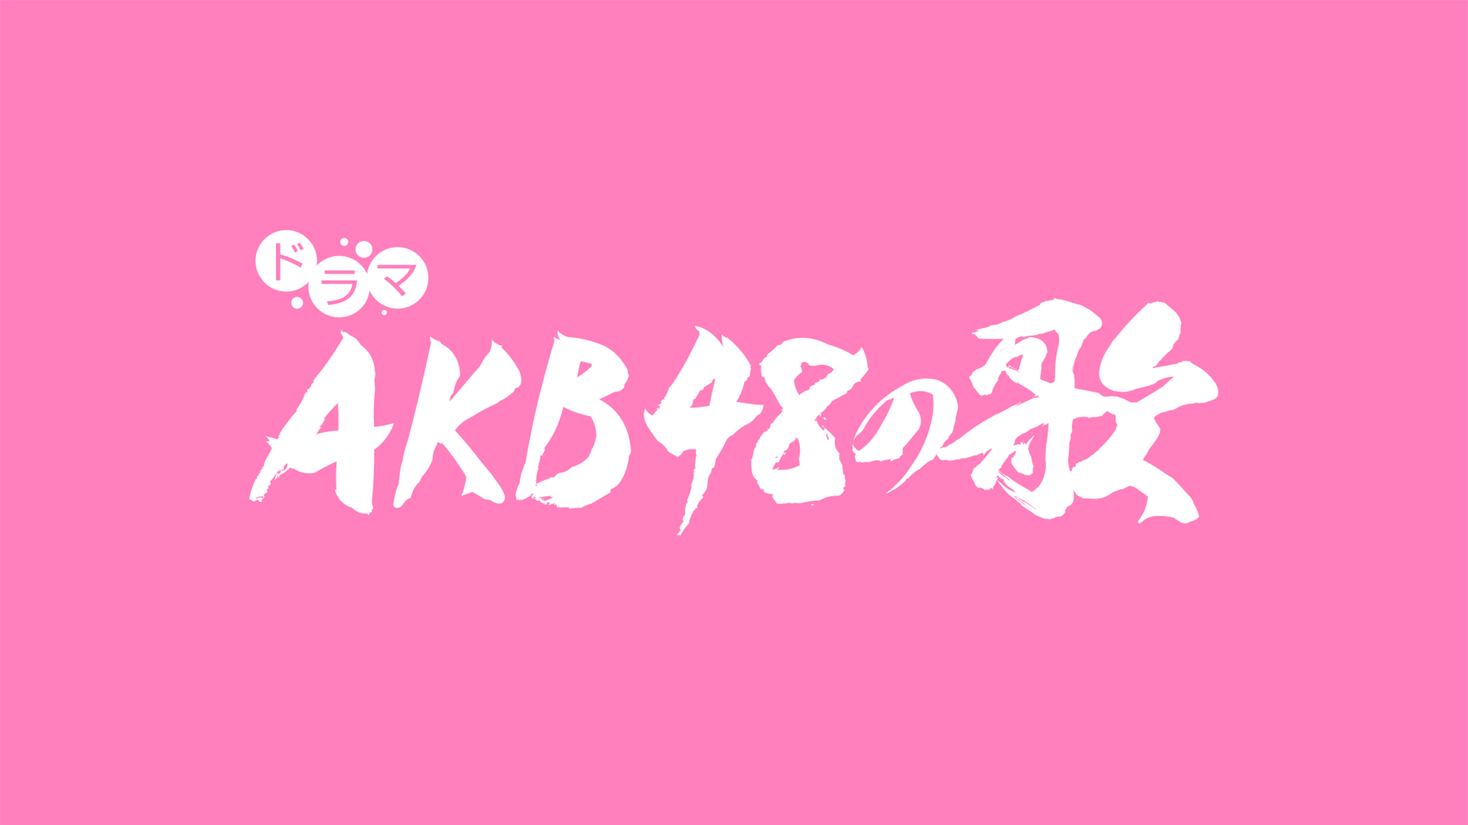 AKB48の歌